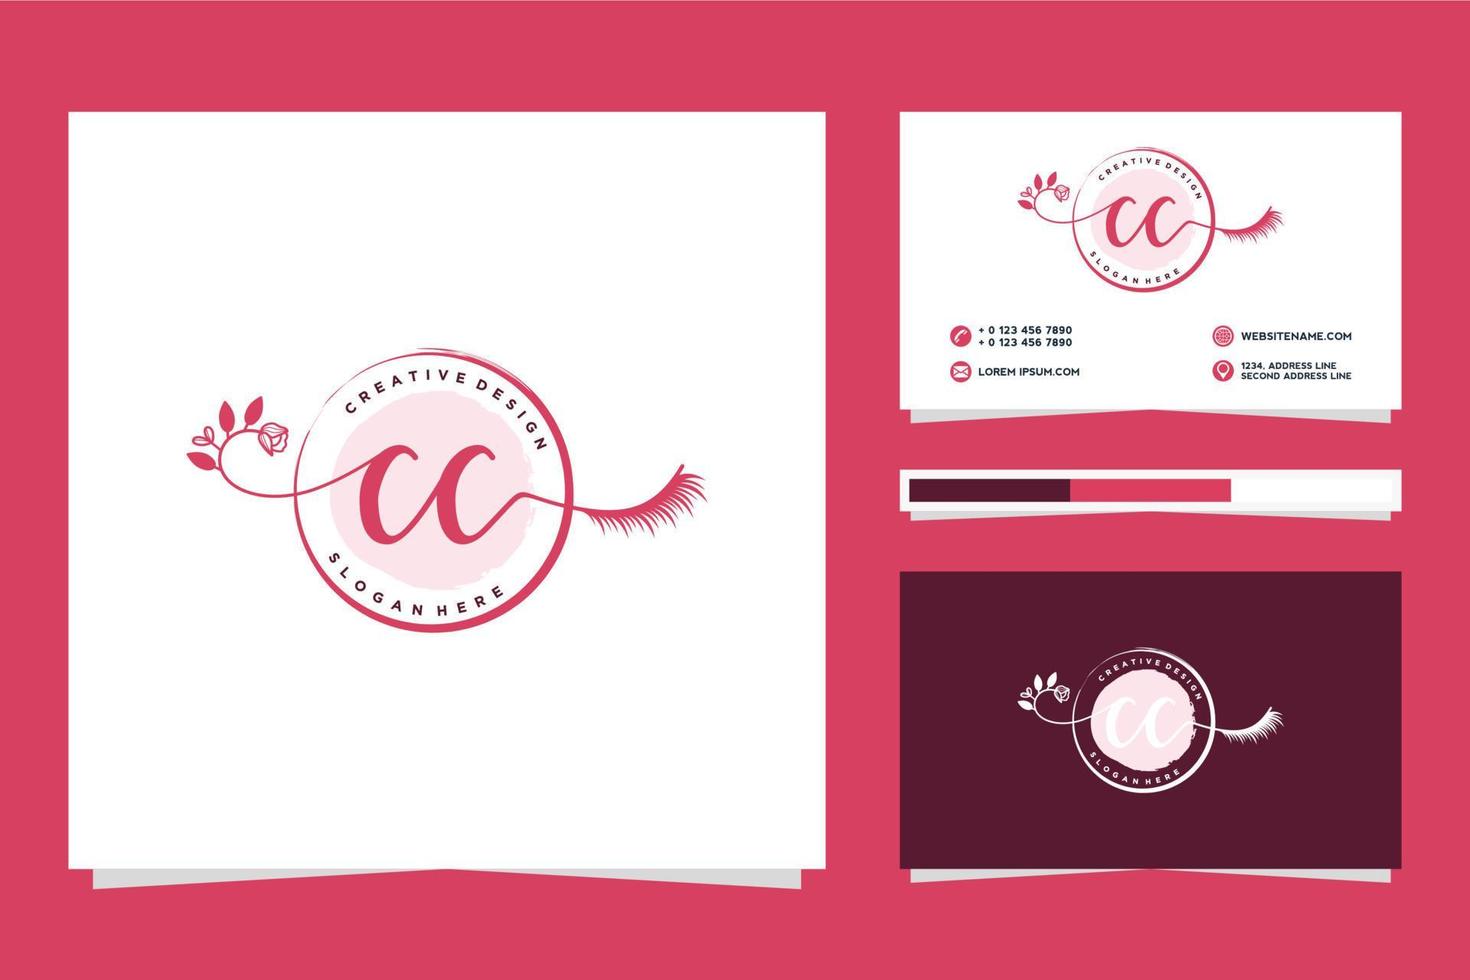 eerste cc vrouwelijk logo collecties en bedrijf kaart templat premie vector